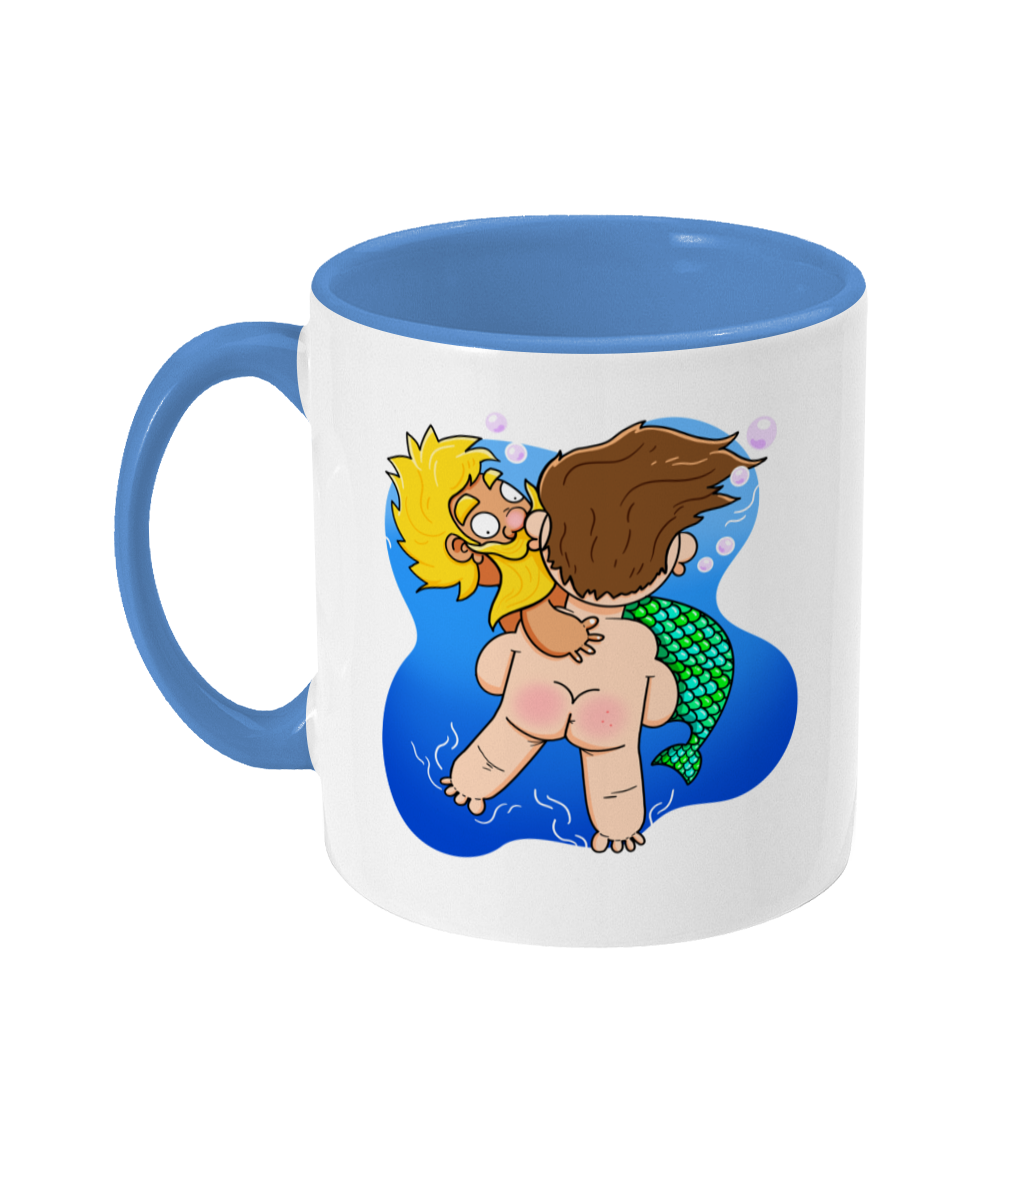 Blond bearded gay mermen being rescued underwater design on a mug